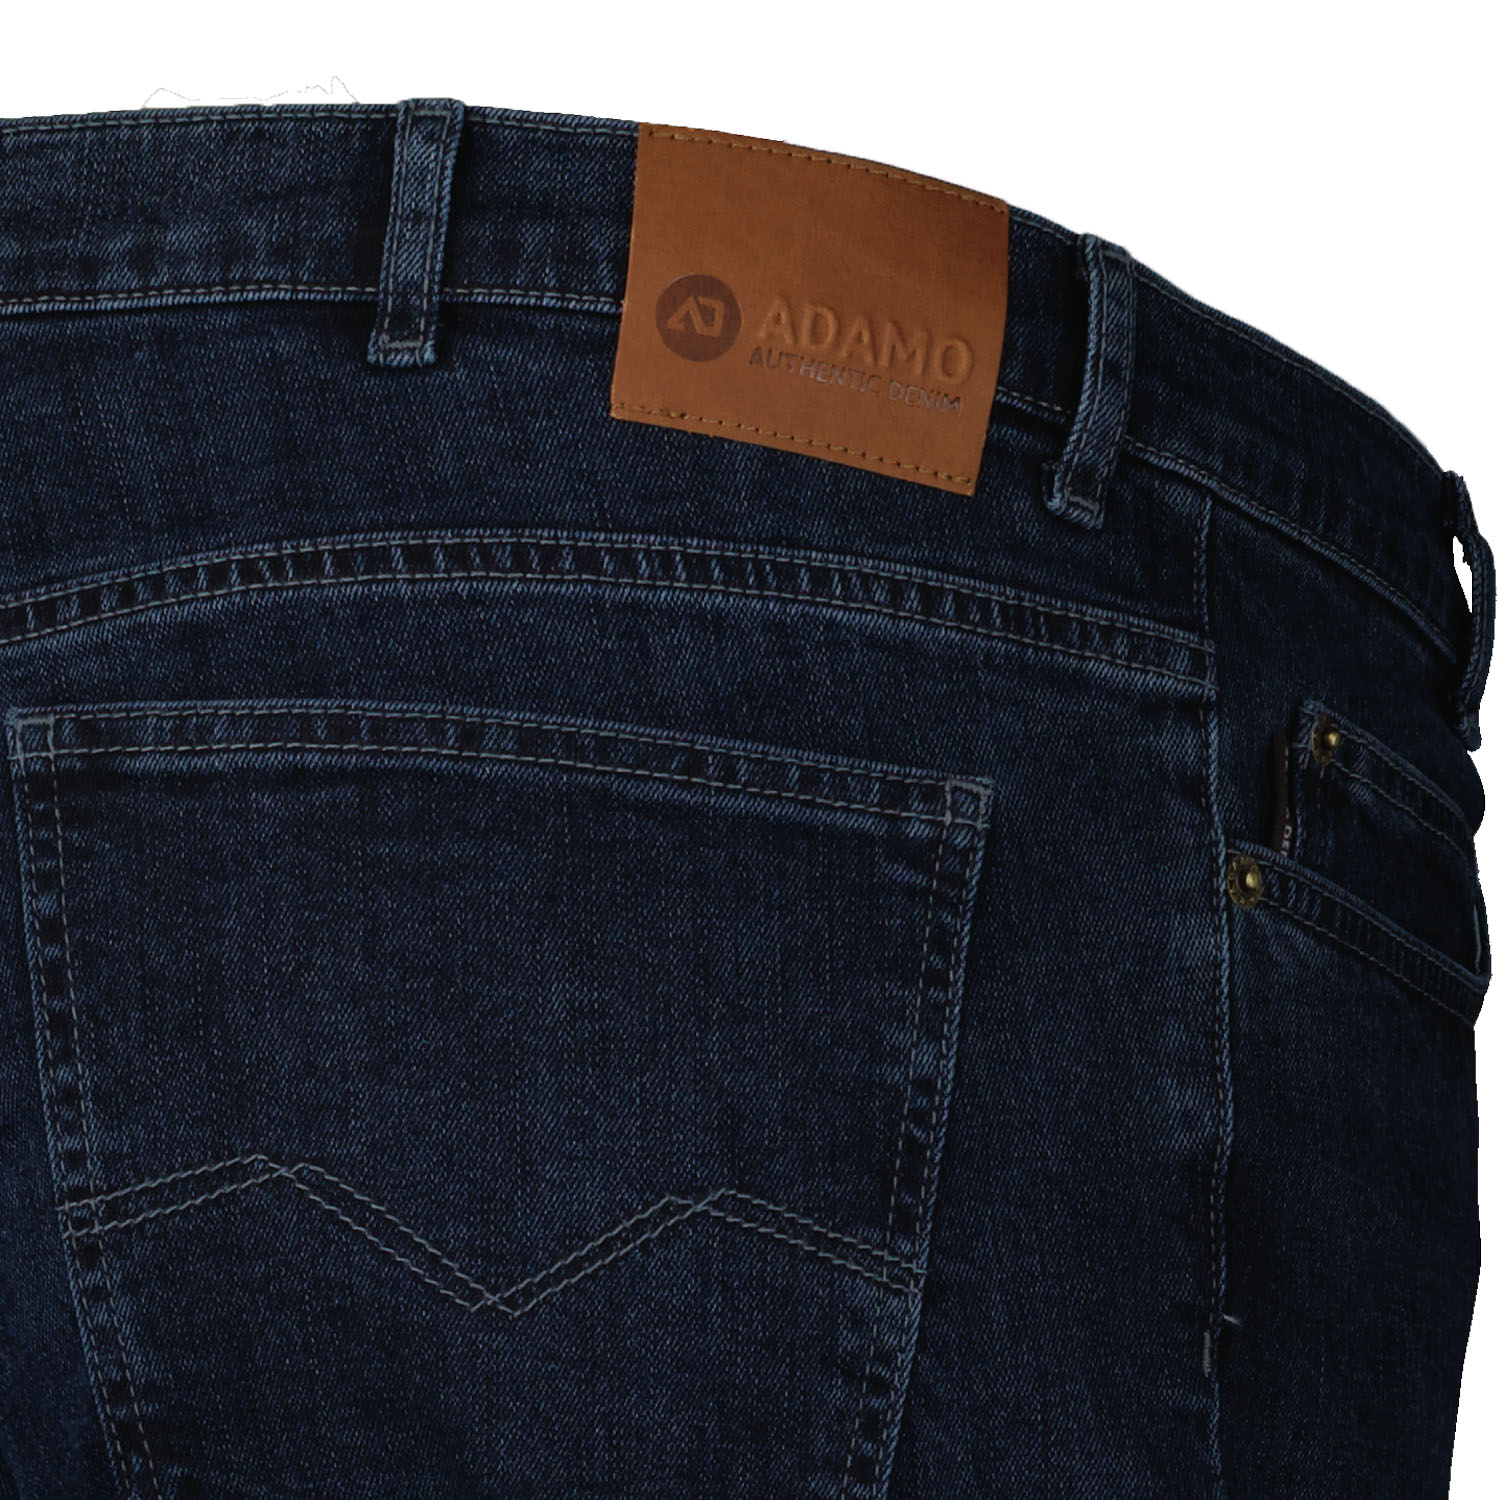 Herren 5-Pocket Jeans lang in dark navy mit Stretch von Adamo Serie COLORADO in Übergrößen 28 - 40